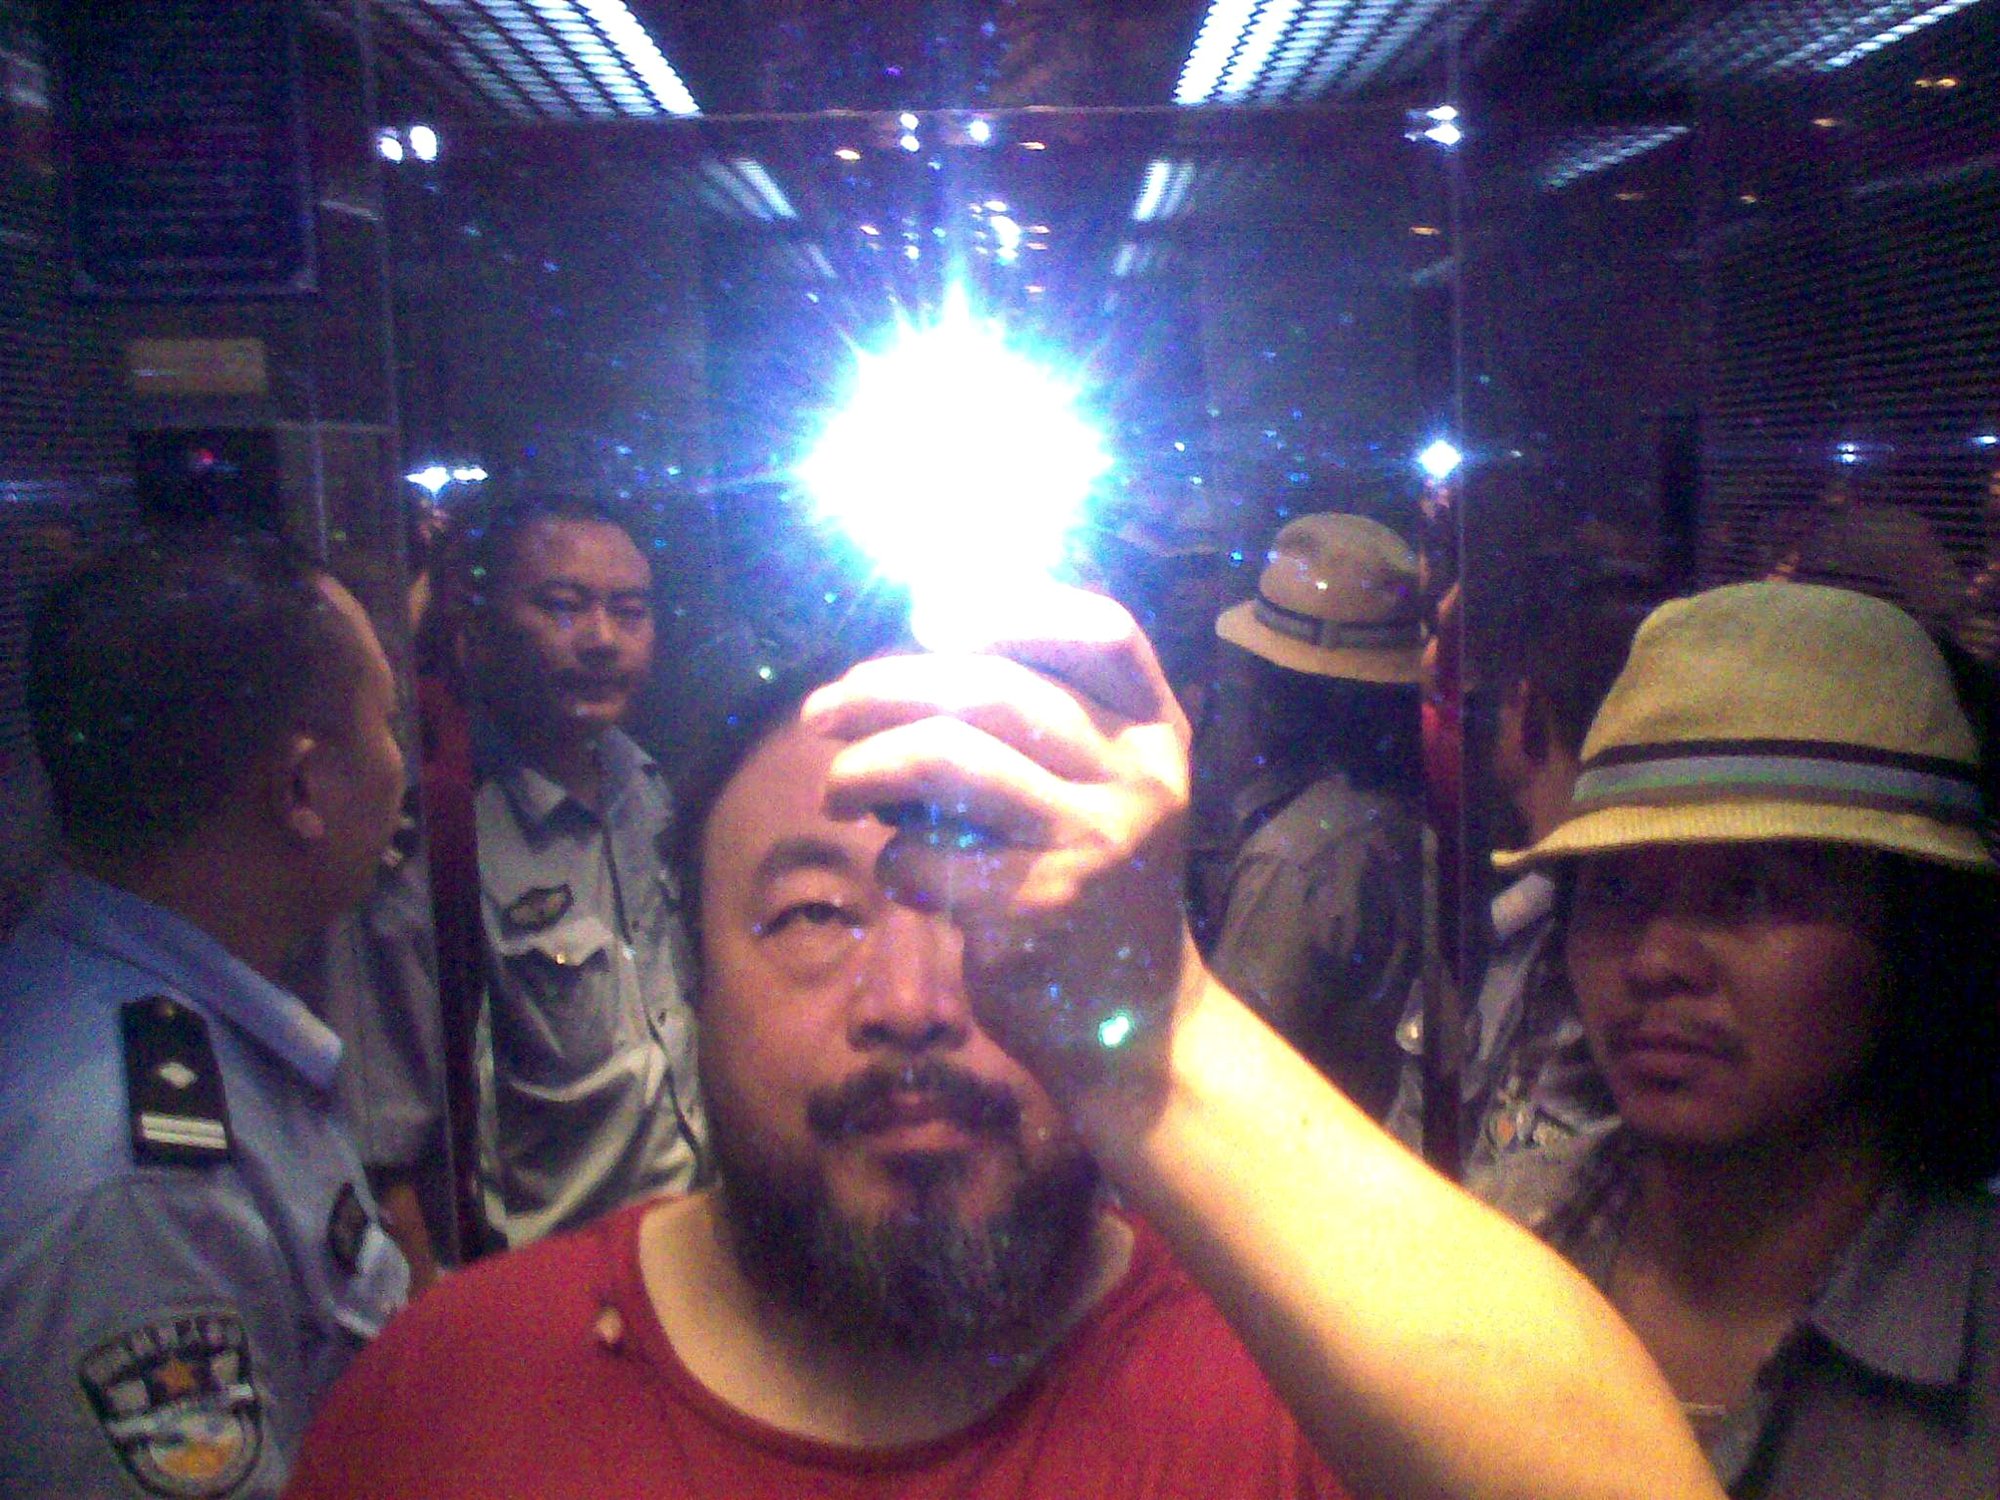 Fotografie "Illumination" des zeitgenössischen Künstlers Ai Weiwei aus dem Jahr 2014. Es zeigt den Künstler wie er ein Foto mit anderen Personen vor einem Spiegel macht,.